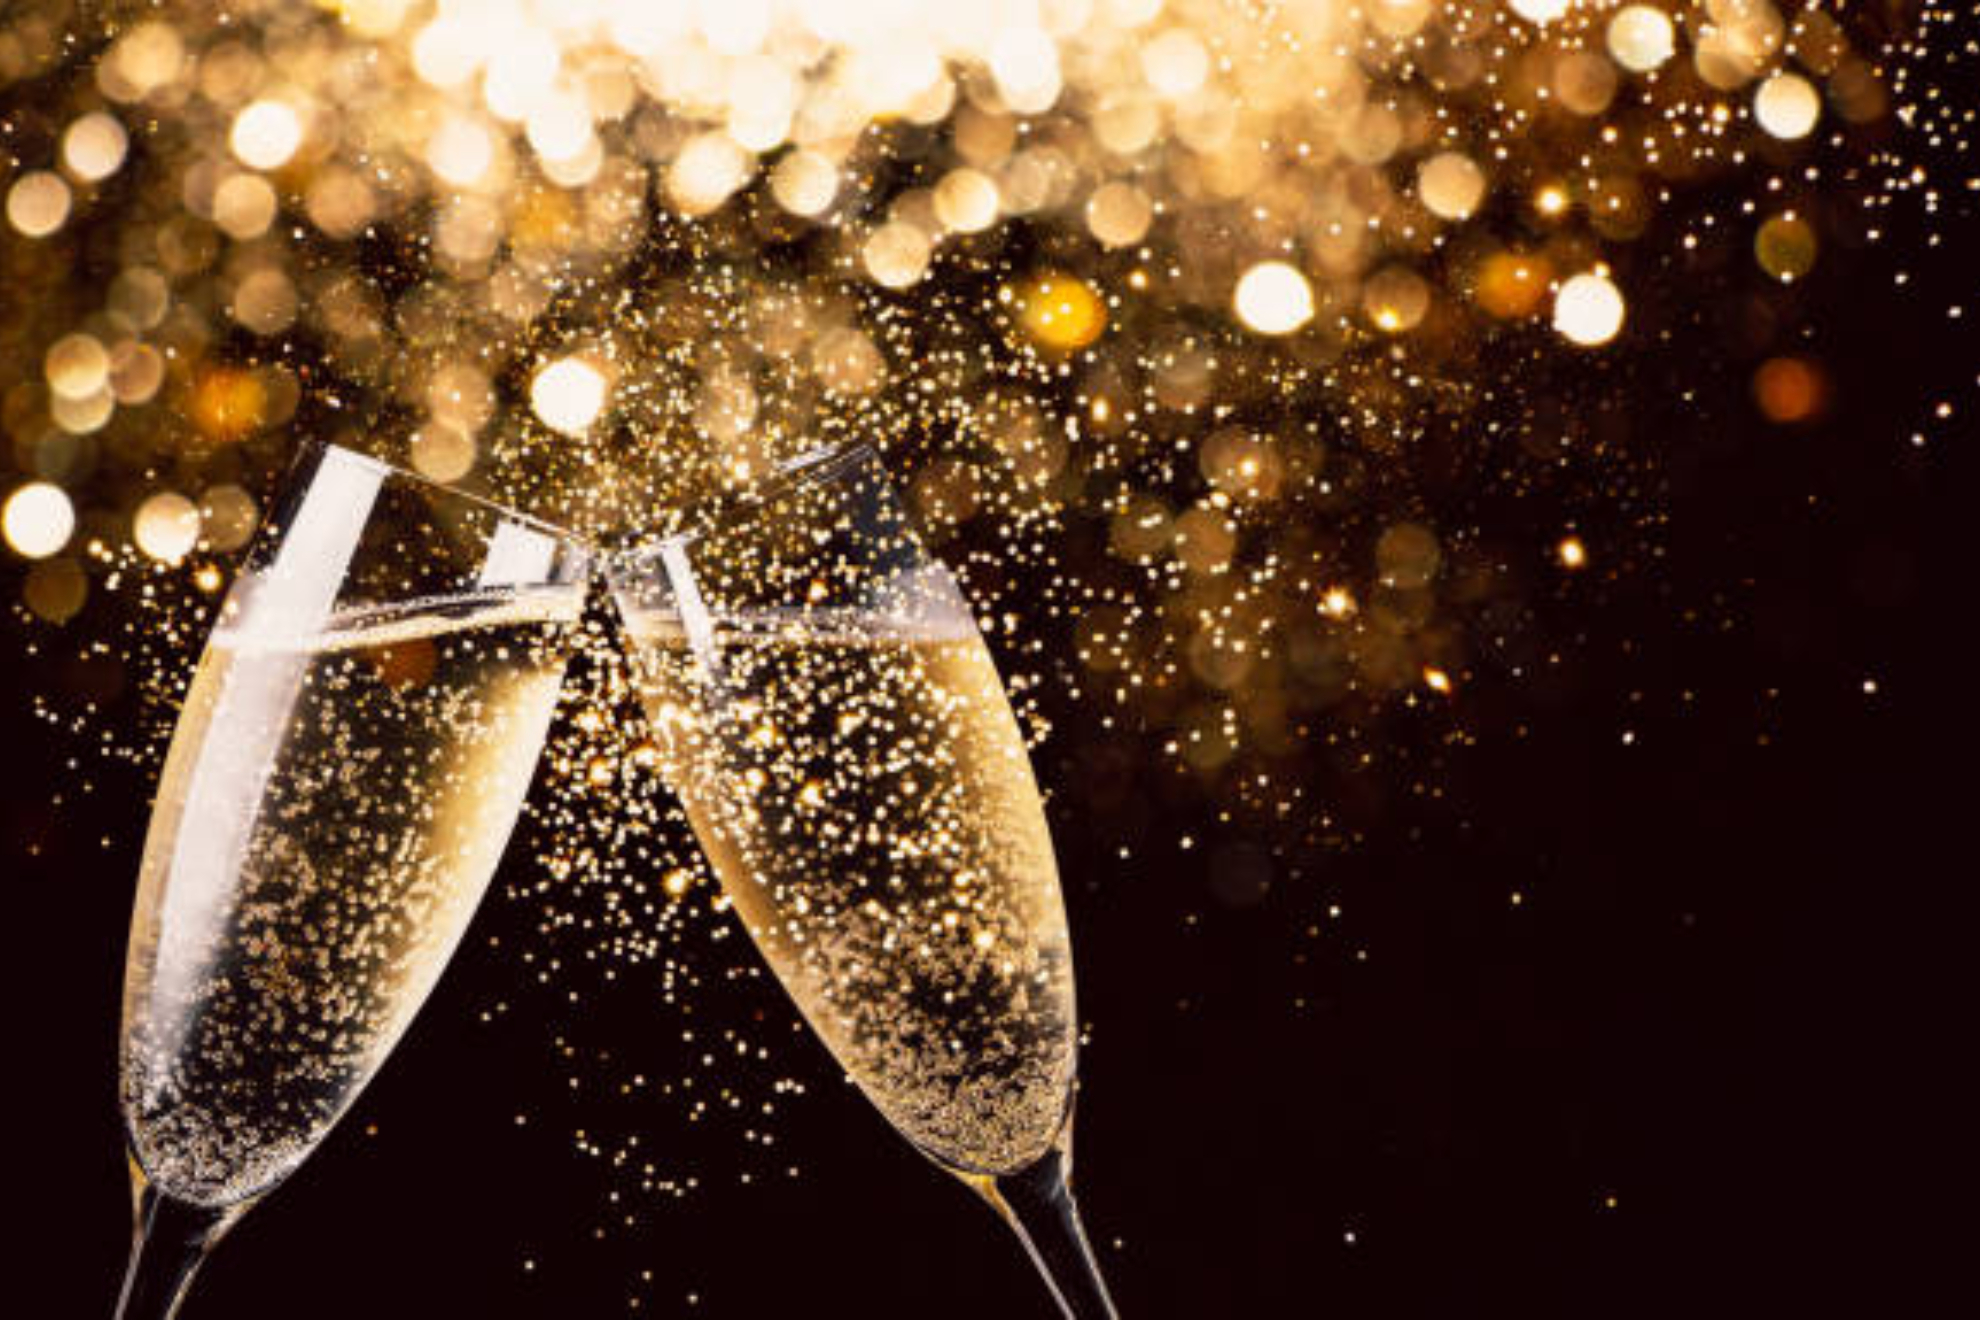 Día Internacional del Champagne: trucos para saber si es de calidad o no